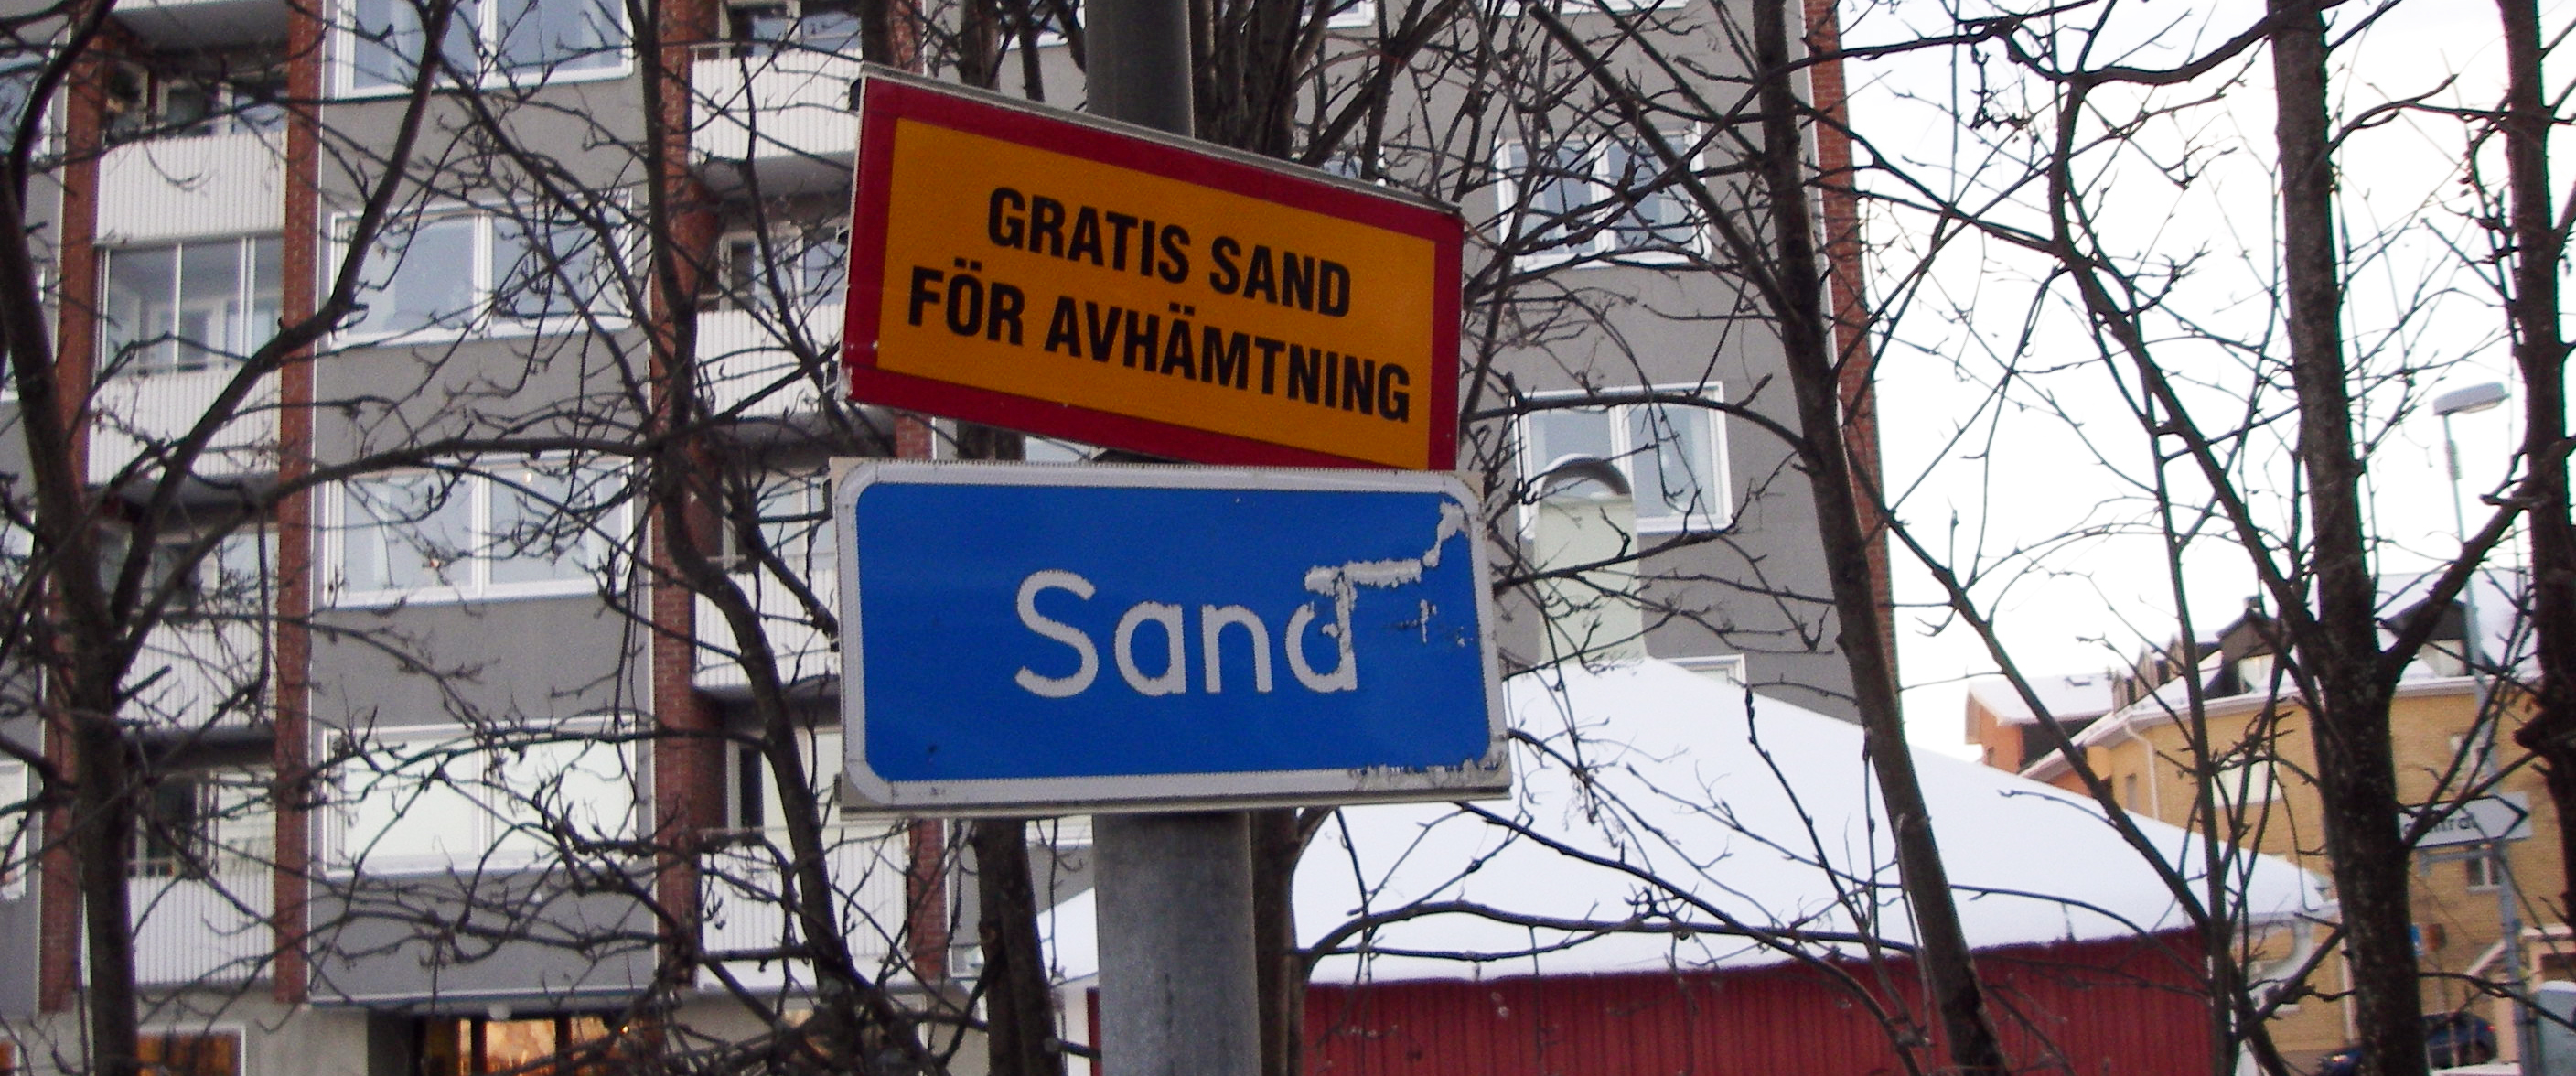 Gratis sand finns att hämta på olika ställen i kommunen.